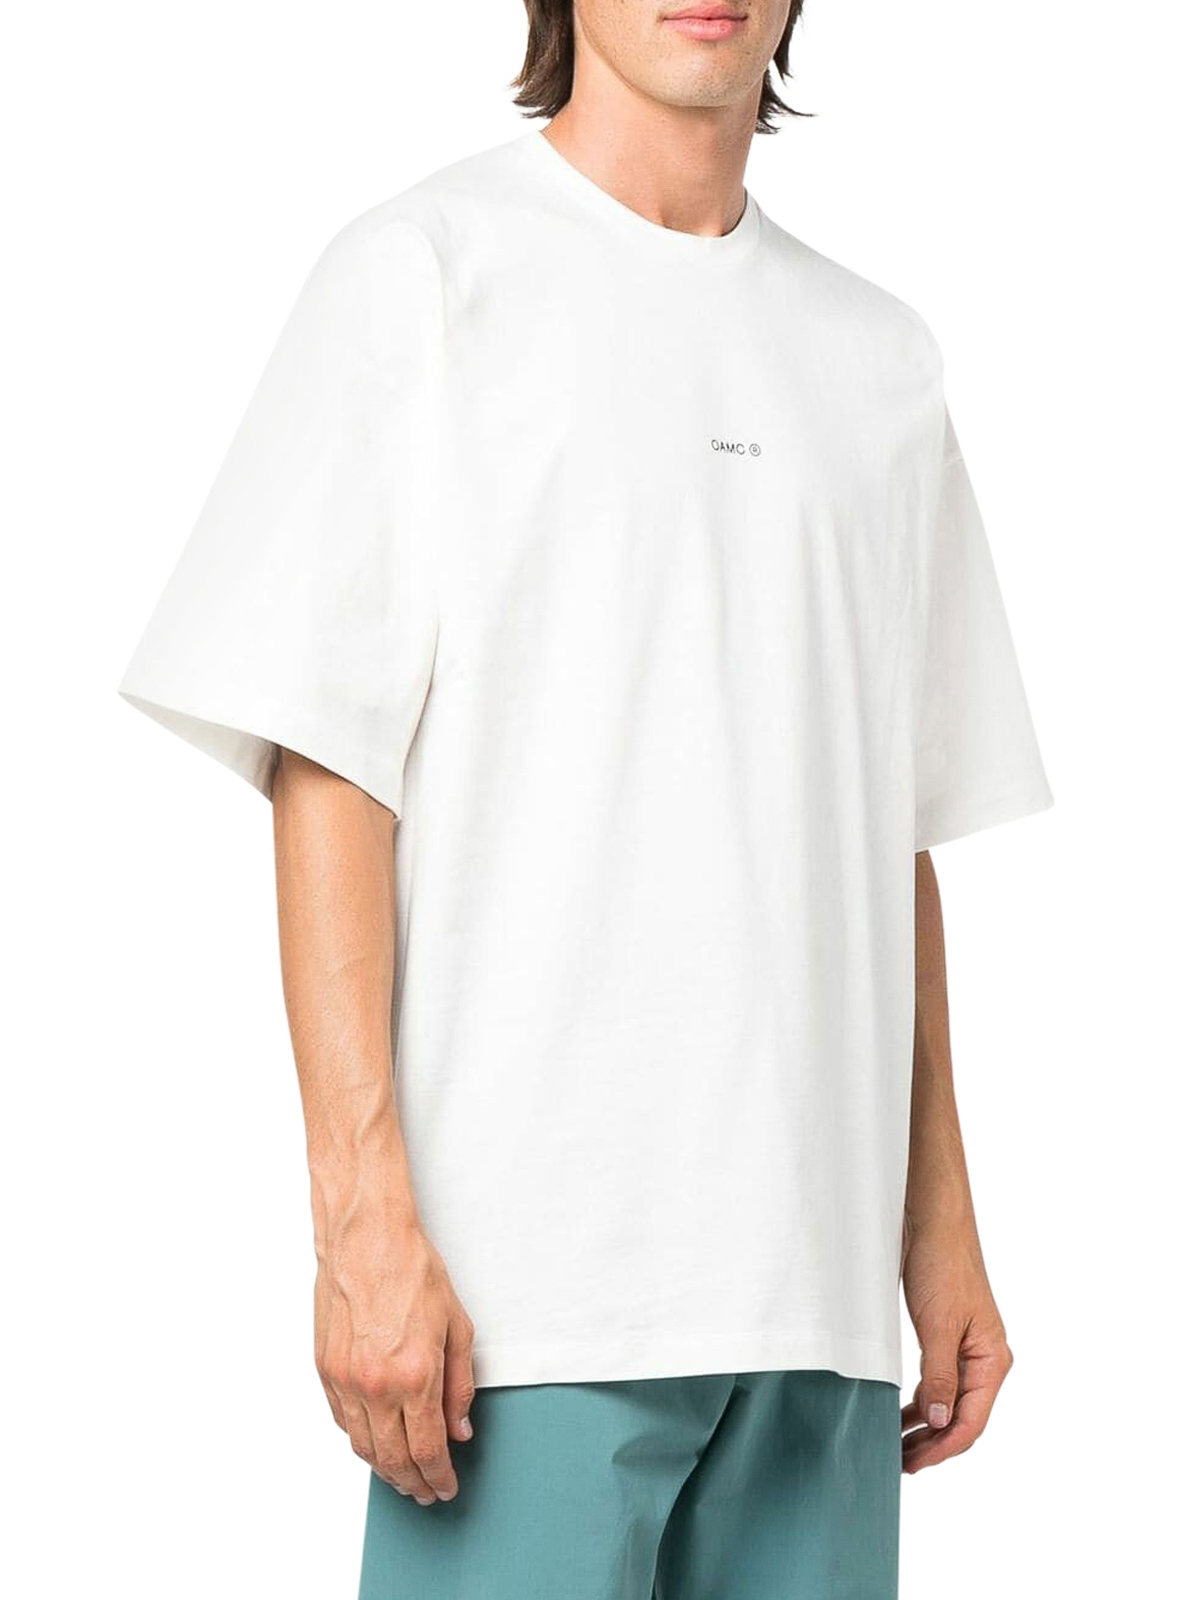 OAMC白Tシャツ - Tシャツ/カットソー(半袖/袖なし)